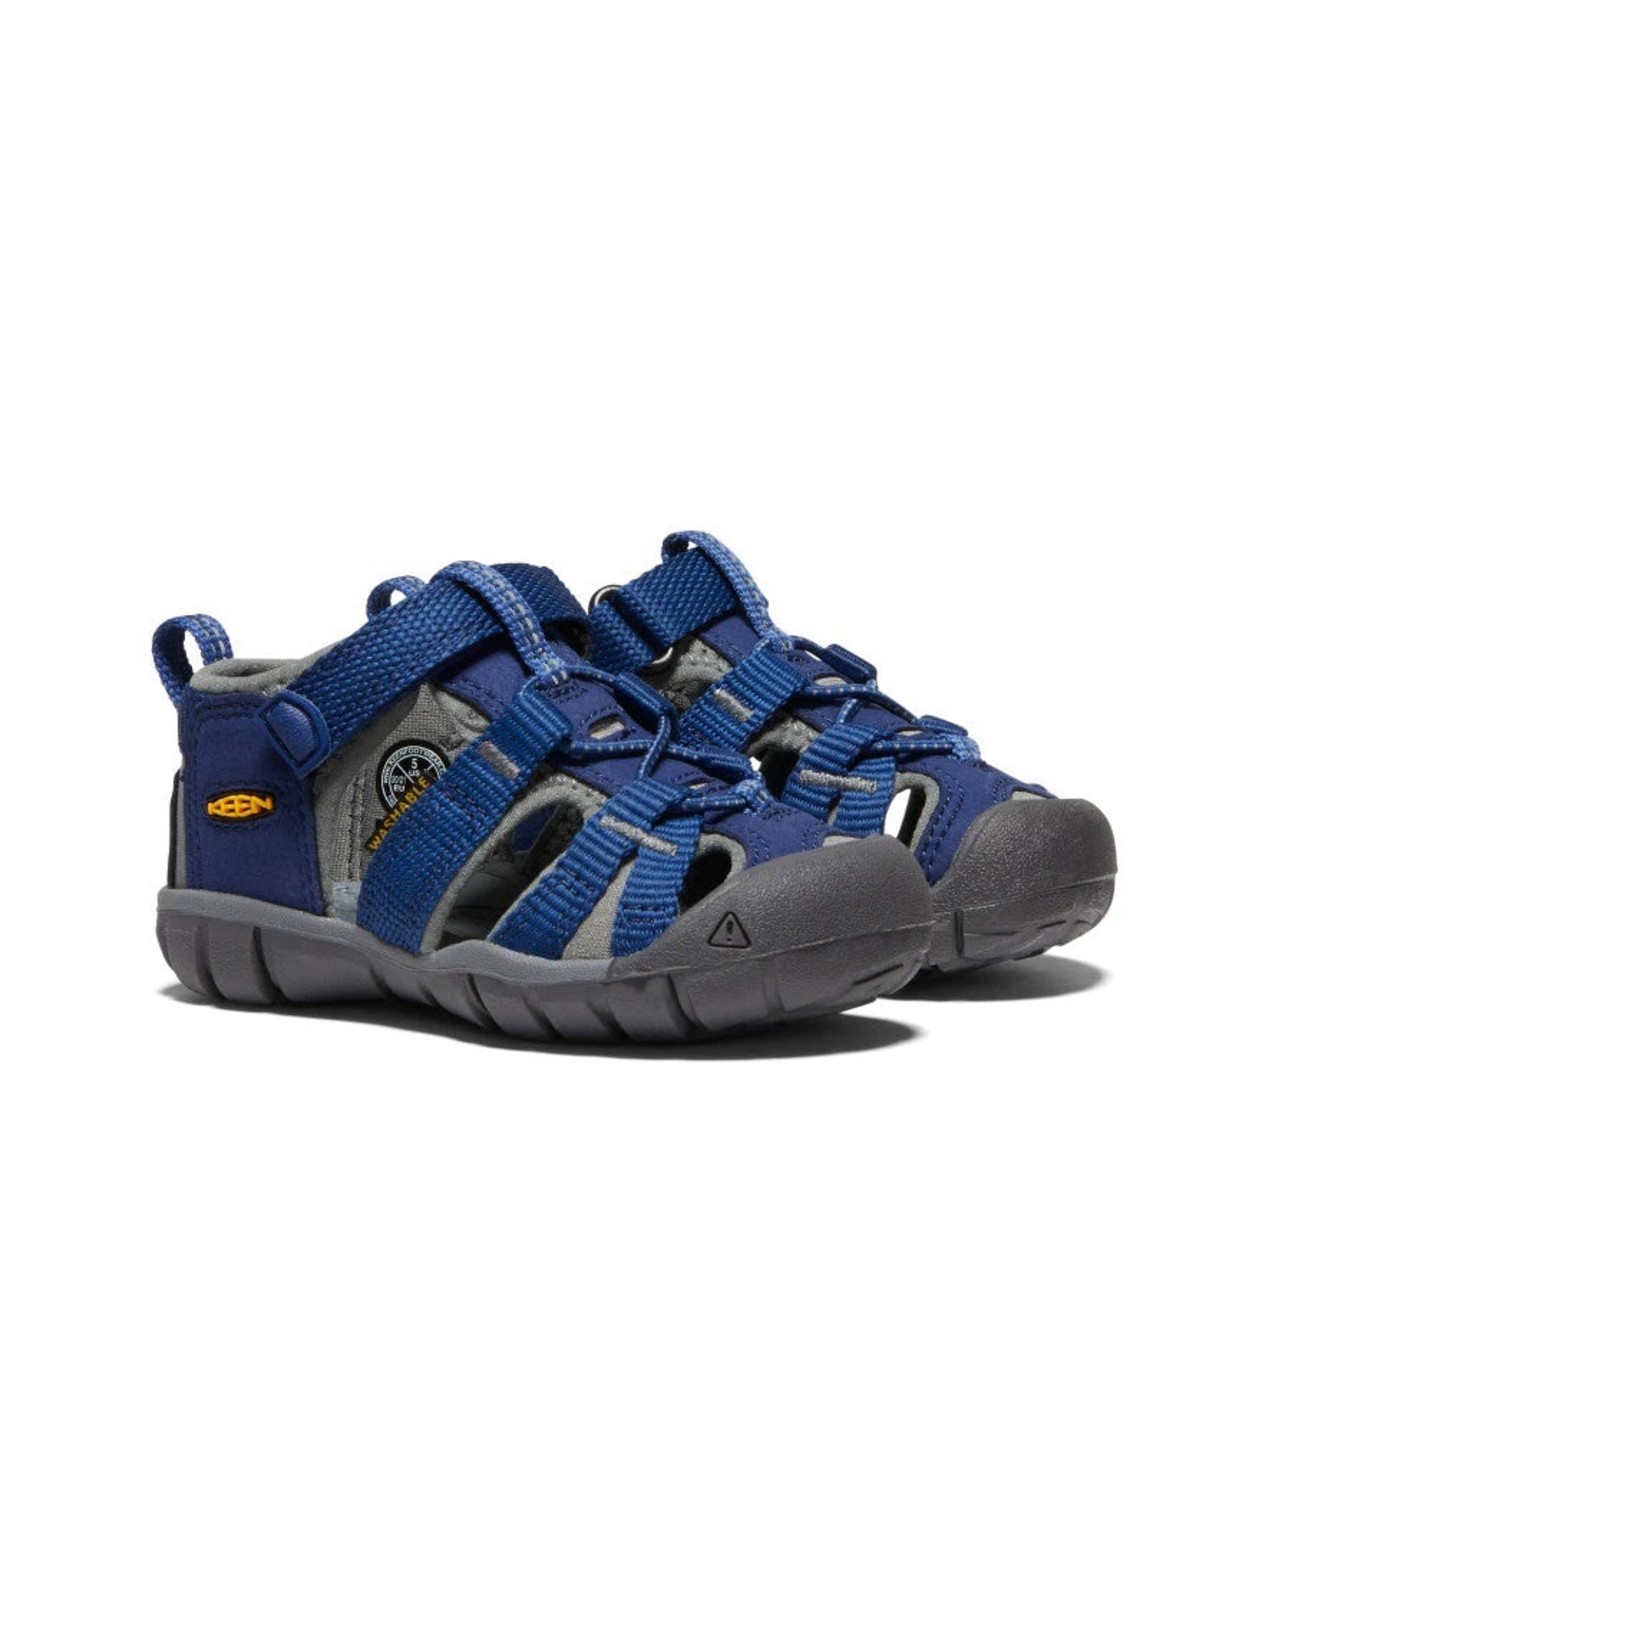 Keen KEEN - Closed toe sandals 'Seacamp  'Blue depths/Gargoyle'